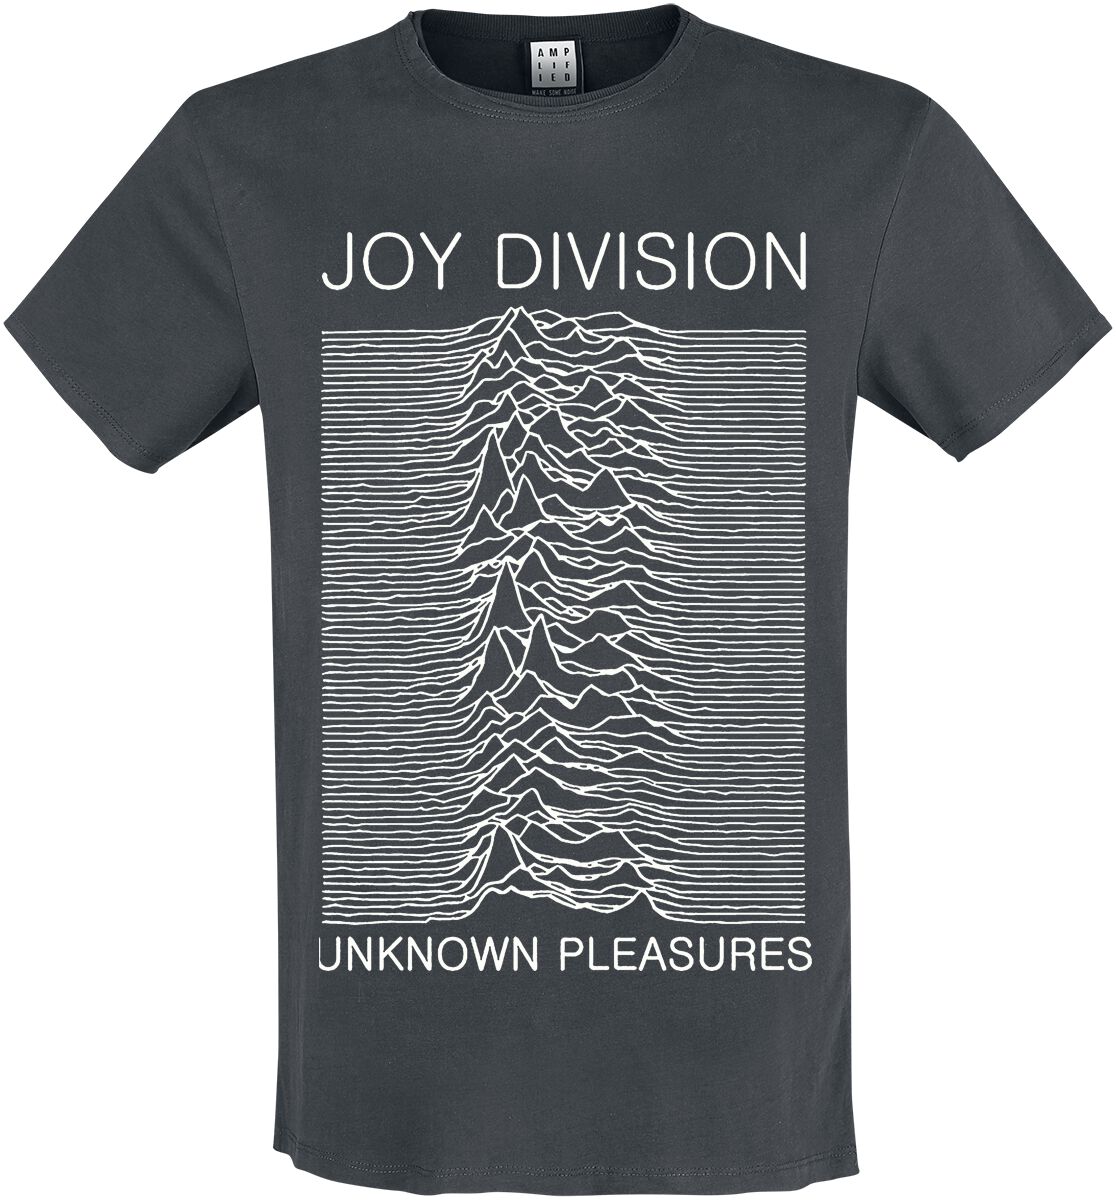 Joy Division T-Shirt - Amplified Collection - Unknown Pleasures - S bis 3XL - für Männer - Größe XL - charcoal  - Lizenziertes Merchandise!